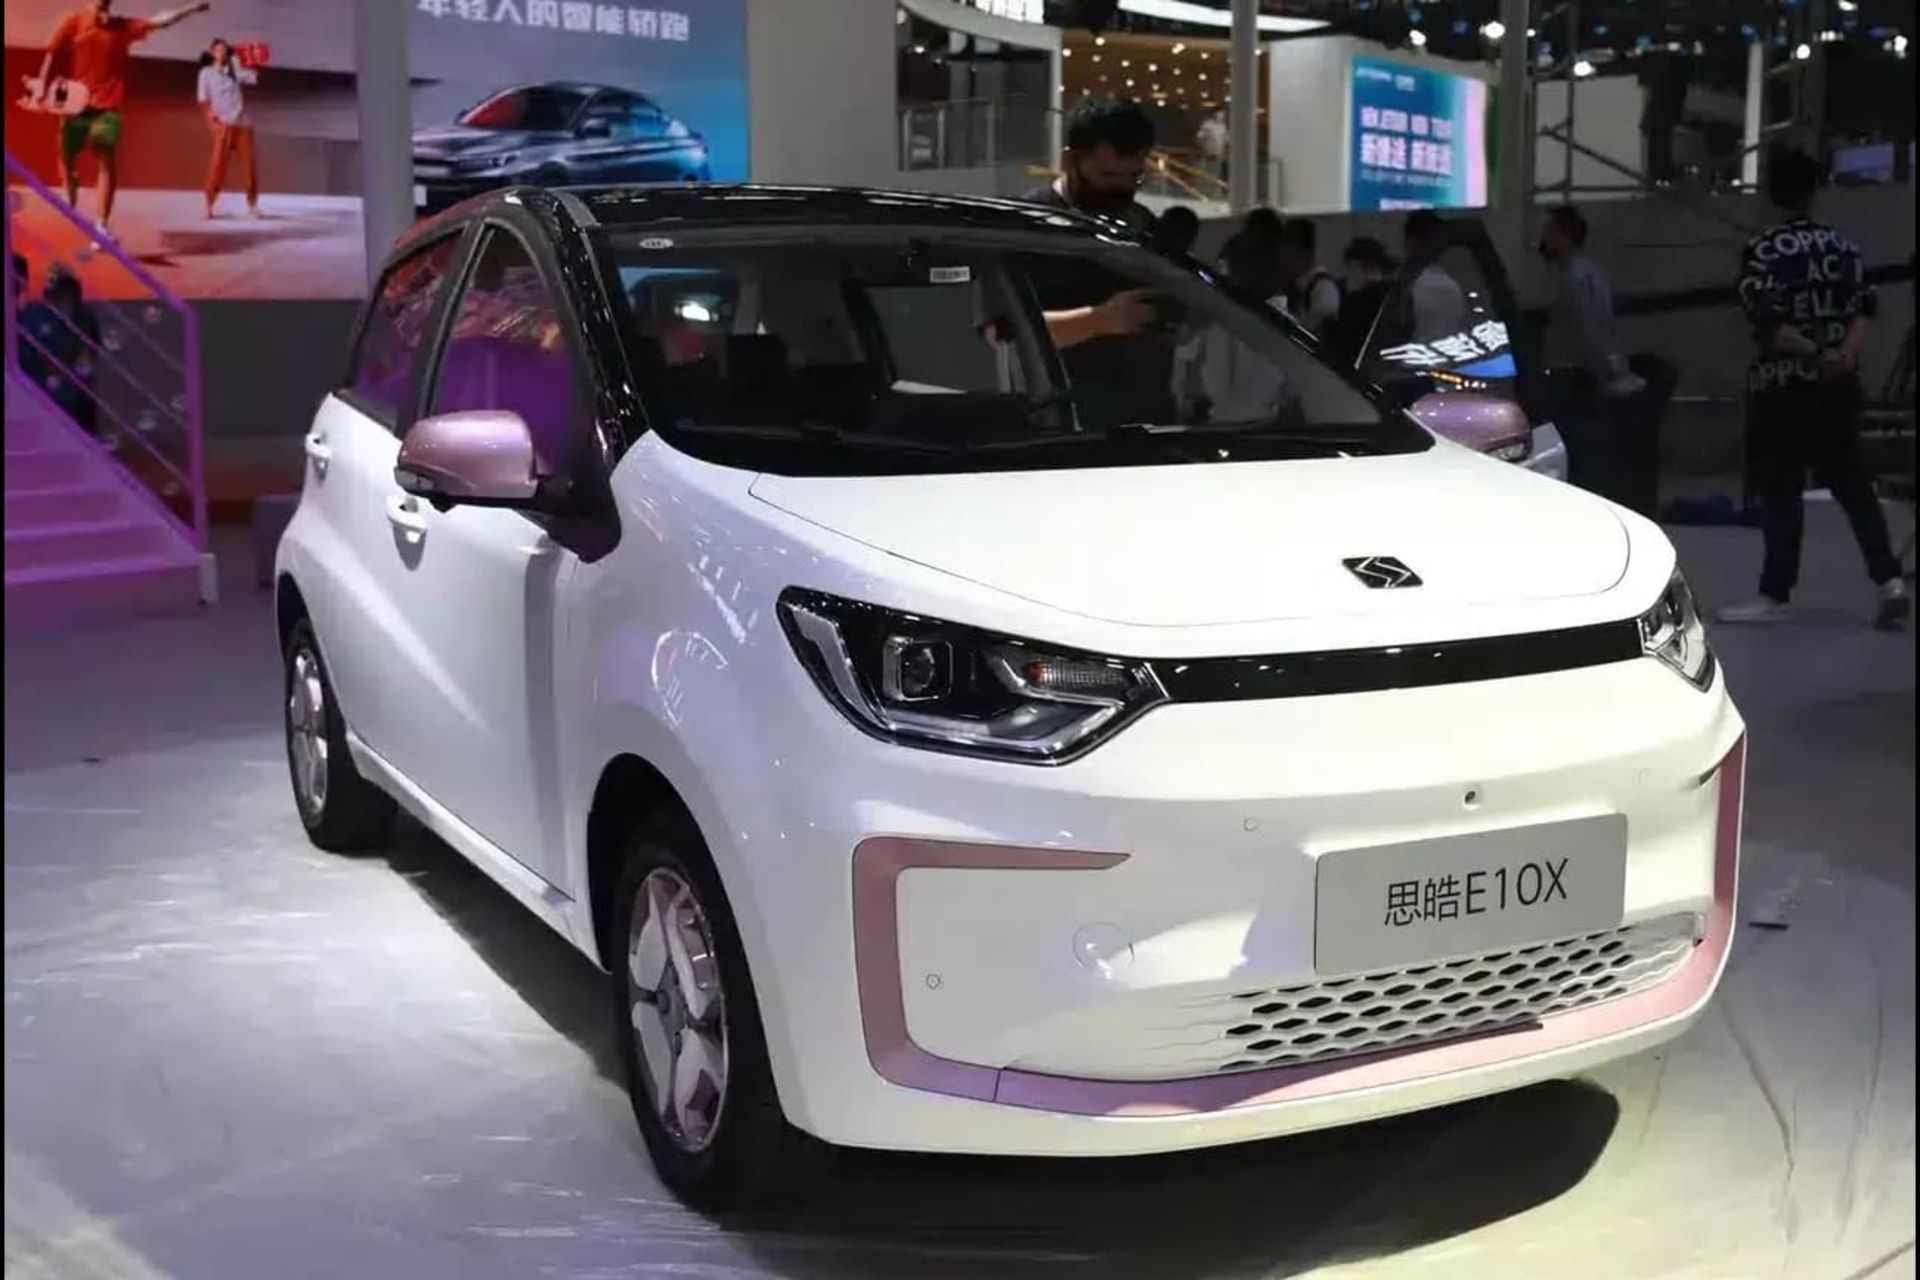 نمایی از روبروی خودروی yiwei e10x به رنگ سفید که اولین خودروی الکتریکی مجهز به باتری های سدیم - یونی است